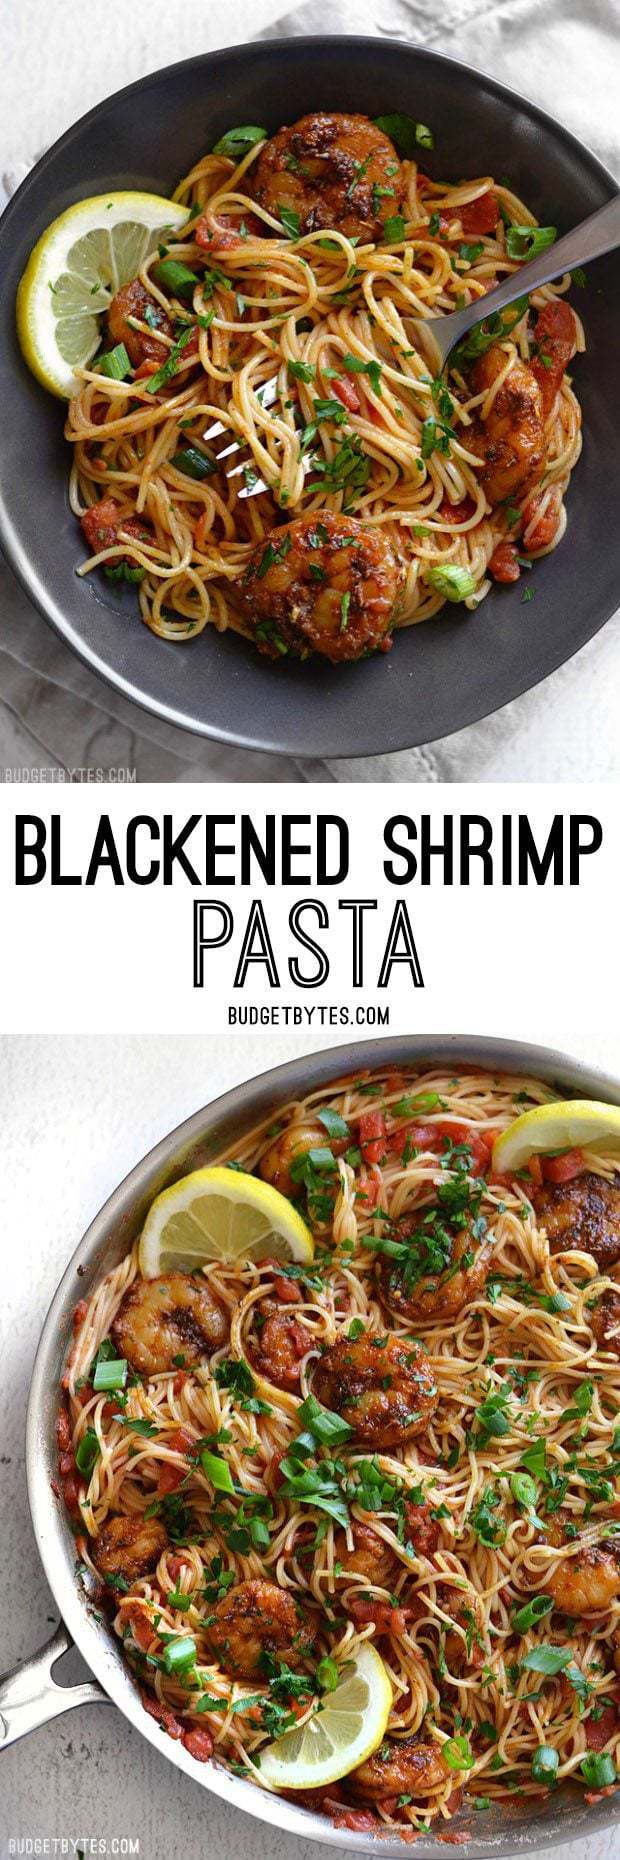 Blackened Shrimp Pasta - Budget Bytes